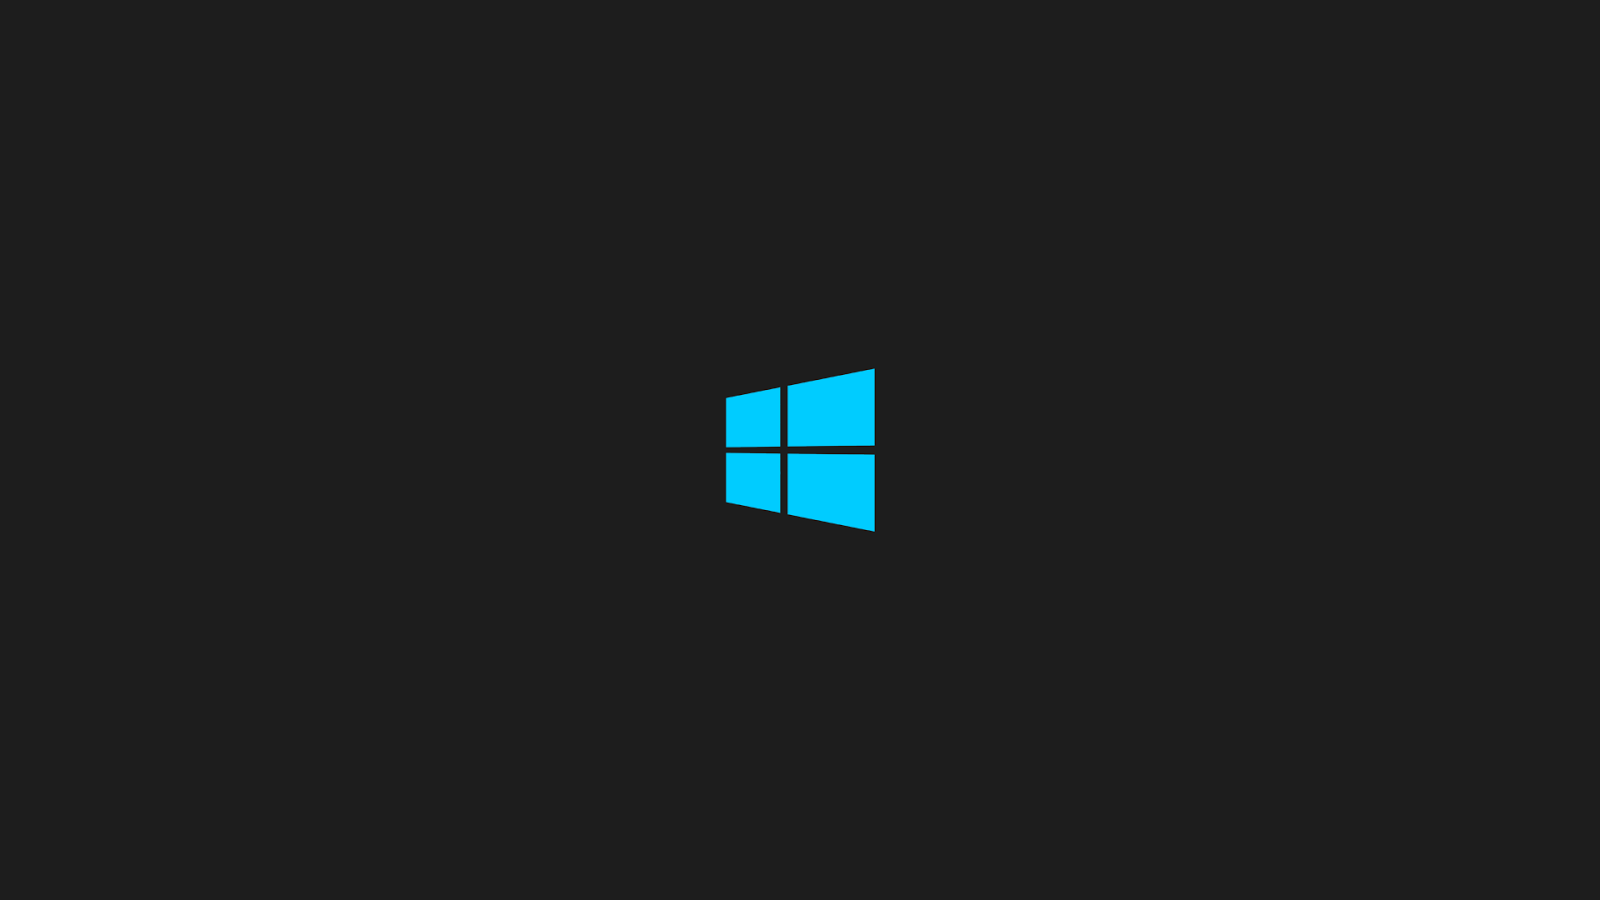 Dark Windows 10 Wallpaper - WallpaperSafari